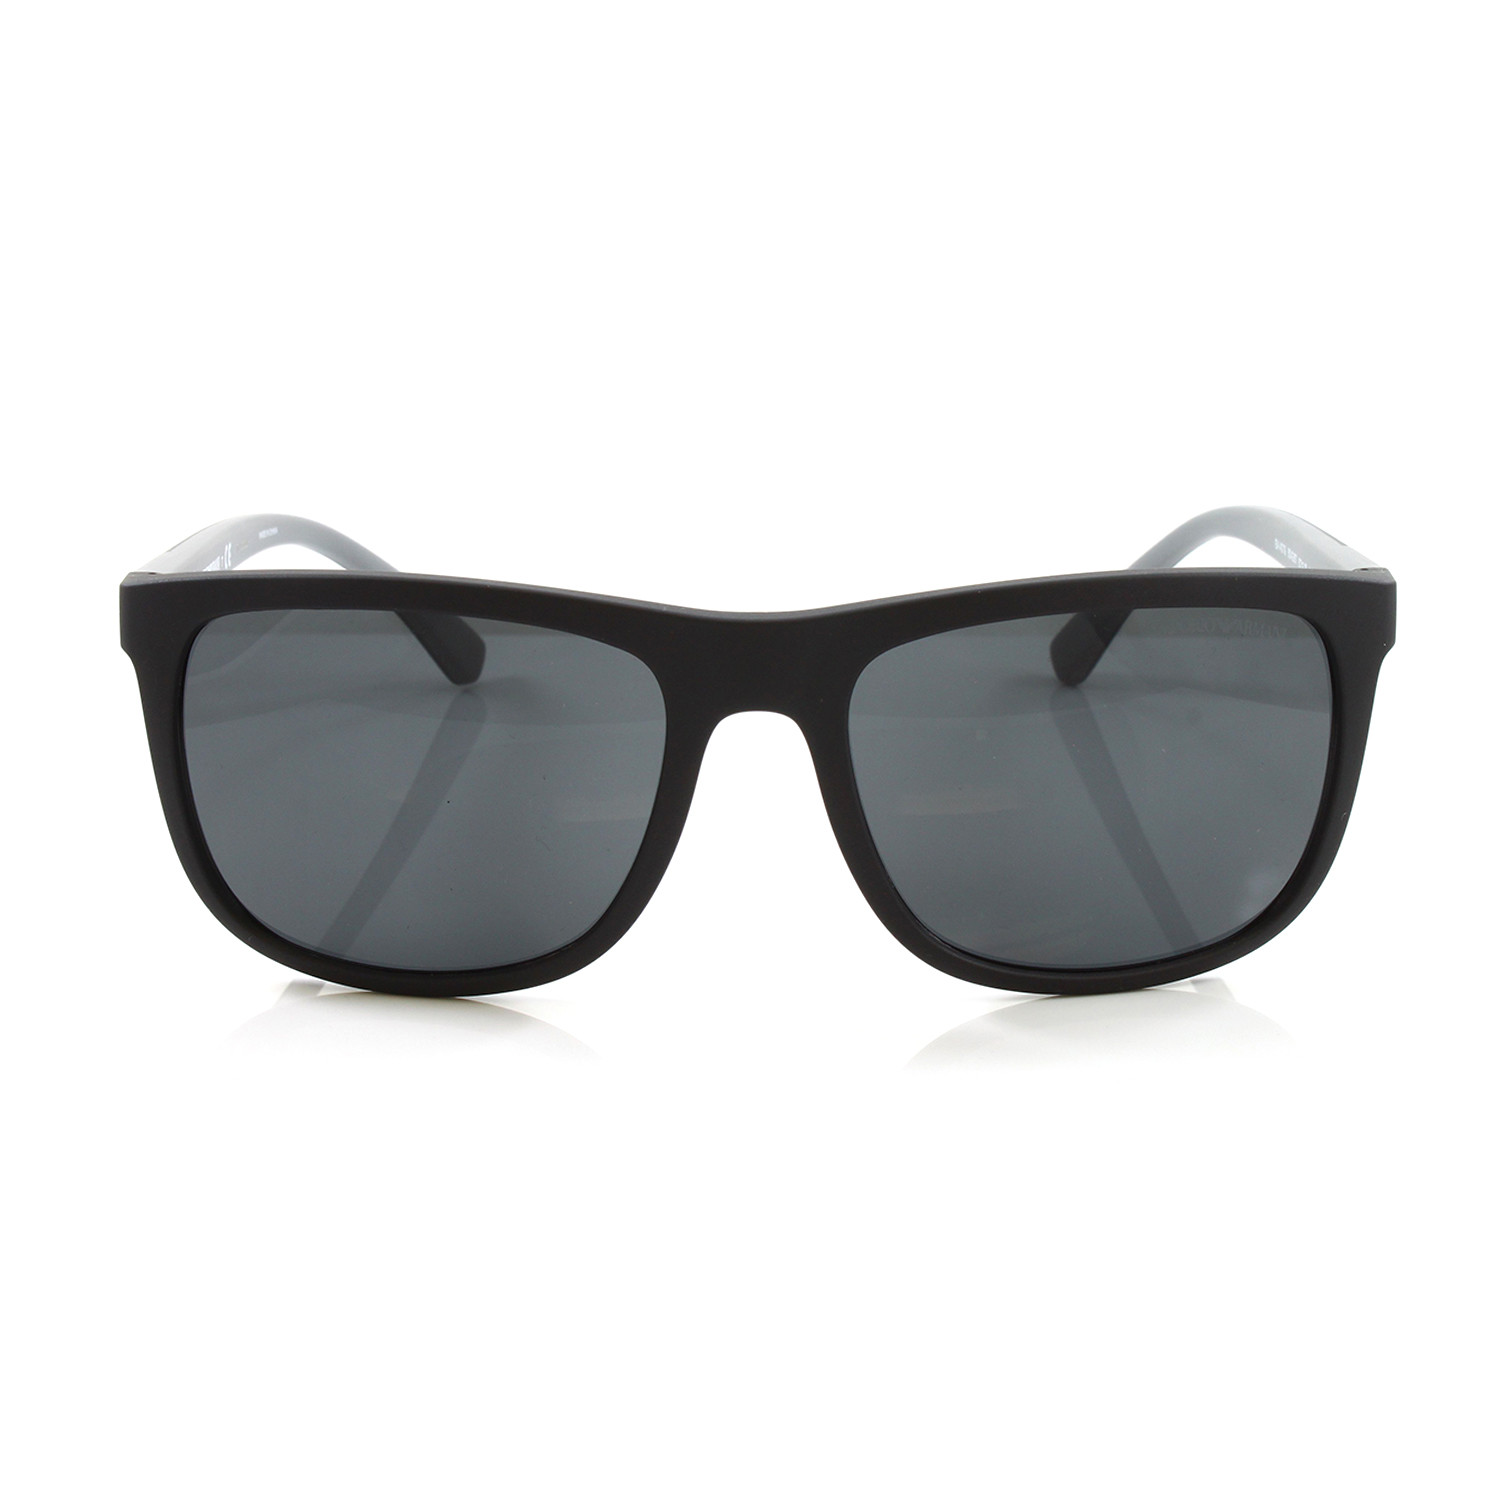 Emporio Armani // Men's EA4079 Sunglasses // Matte Black - Emporio ...